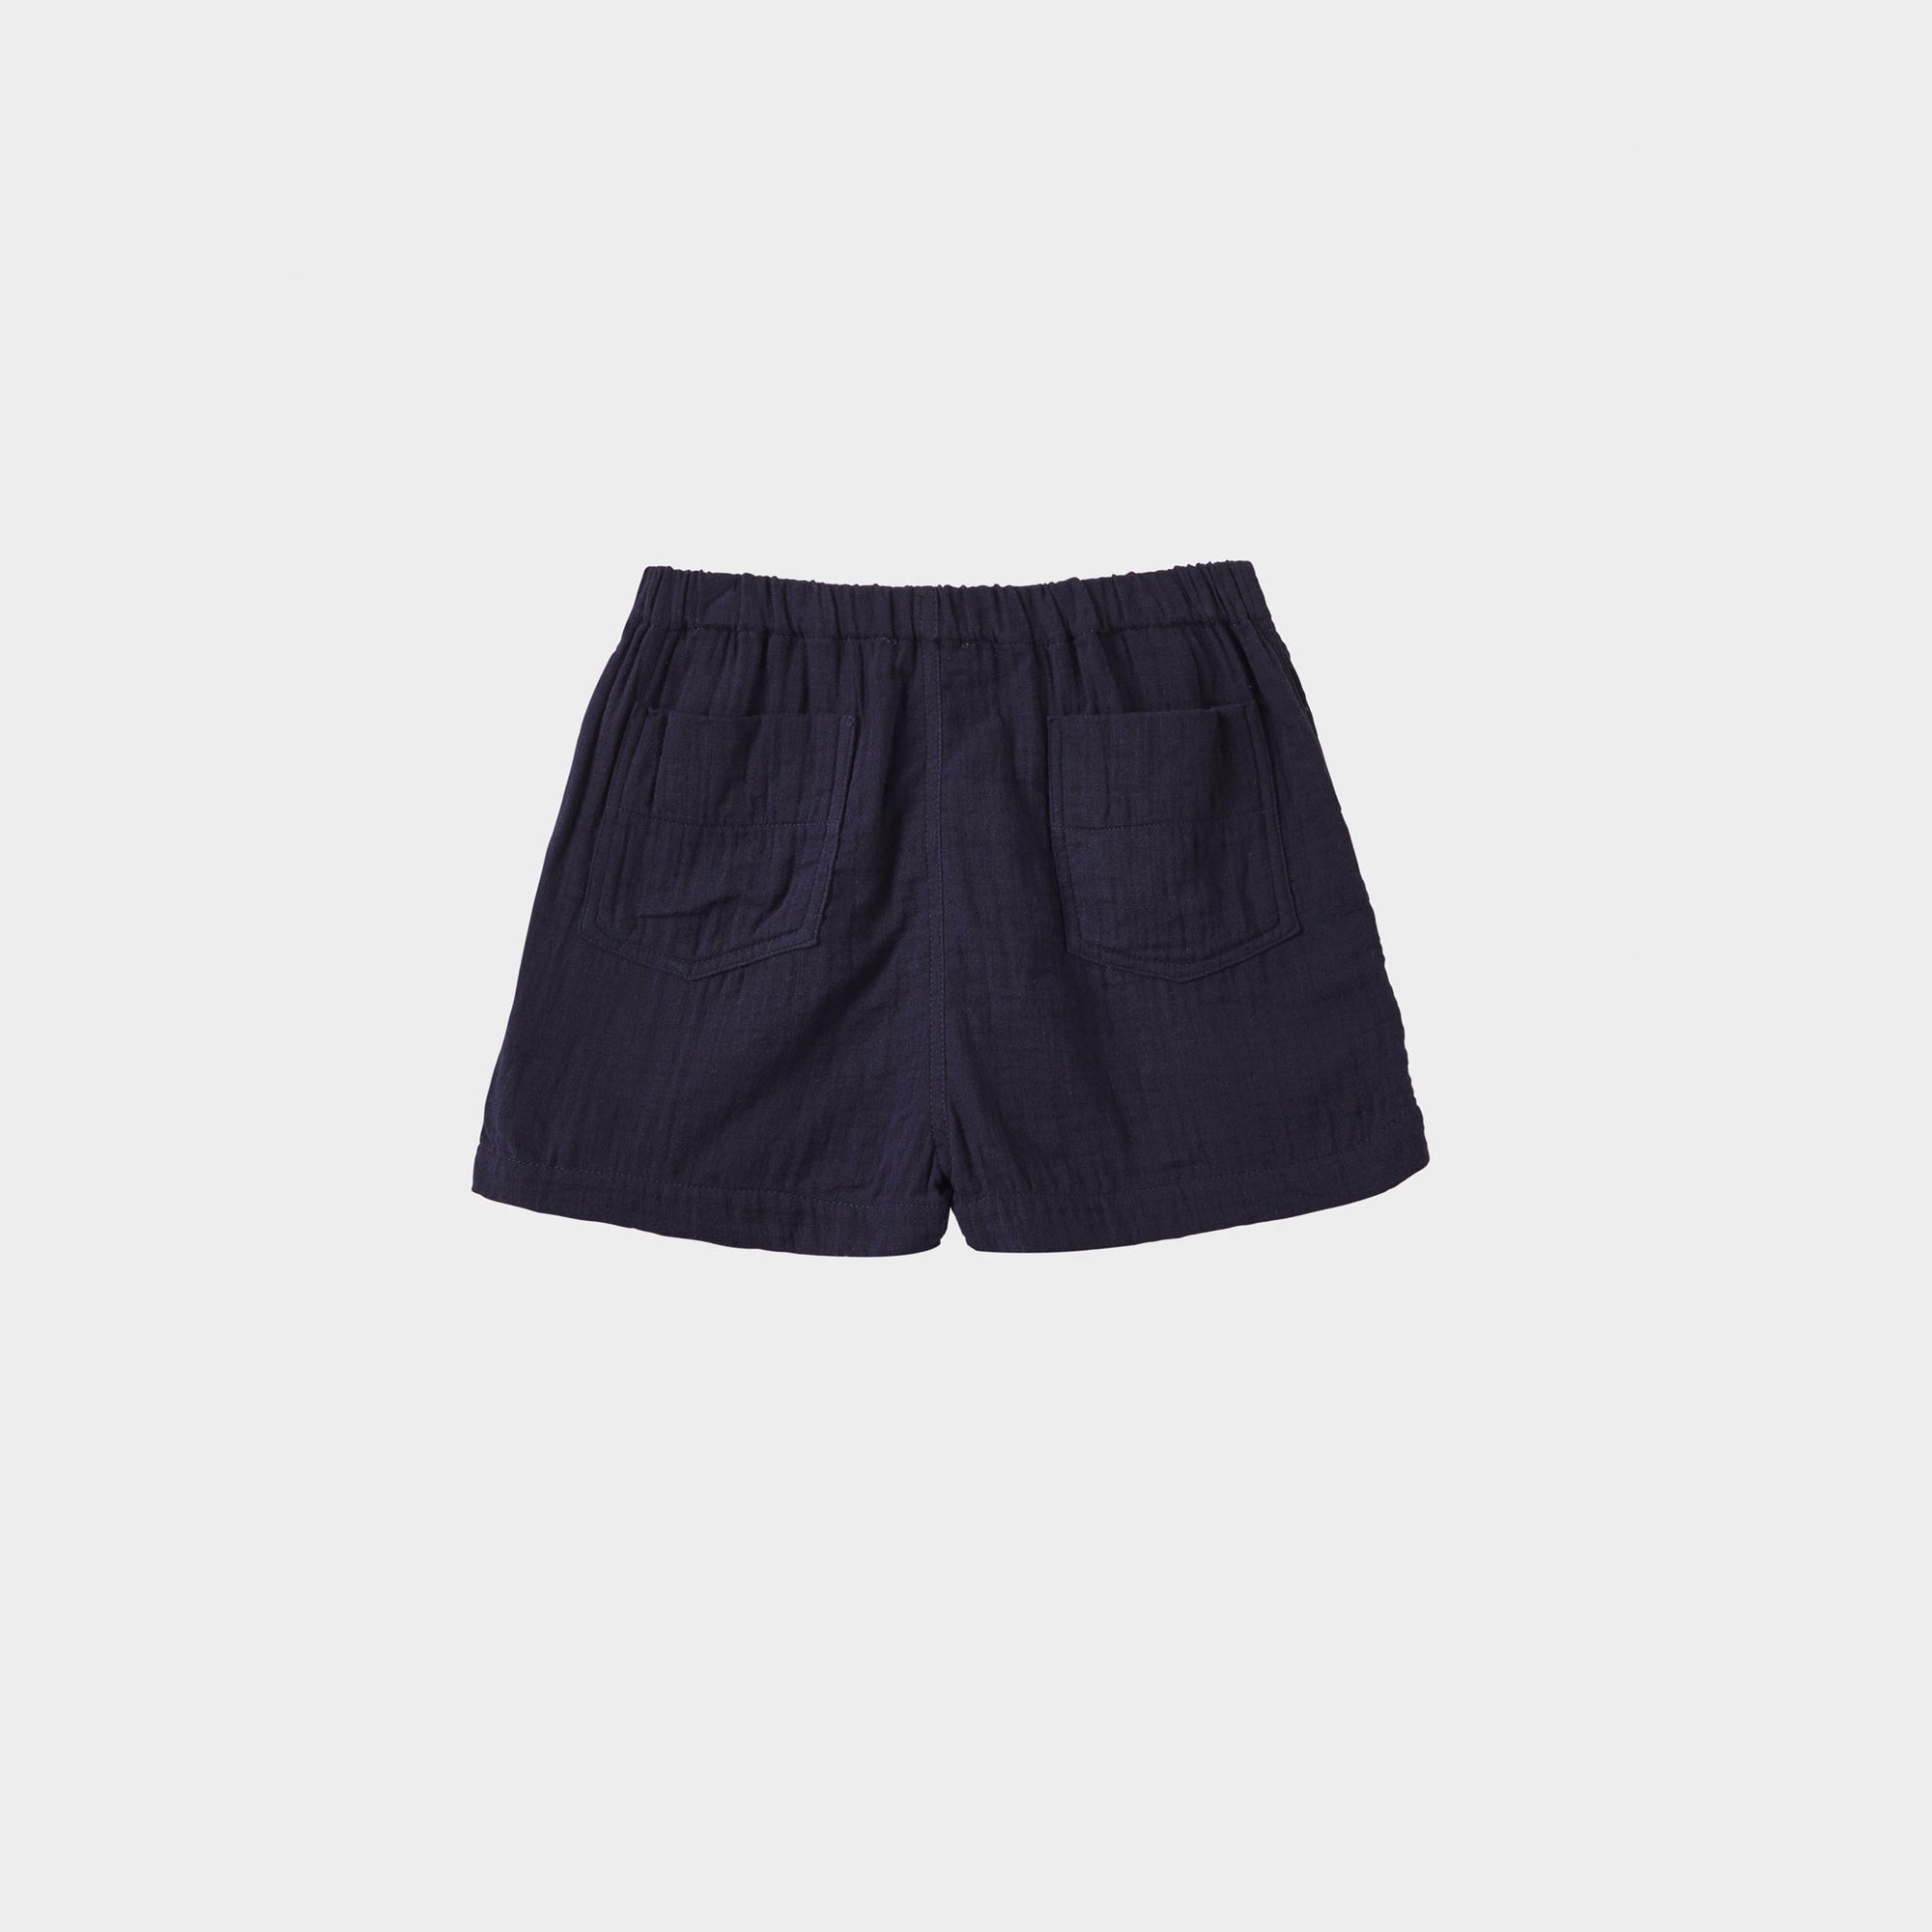 Boys & Girls Navy Cotton Shorts